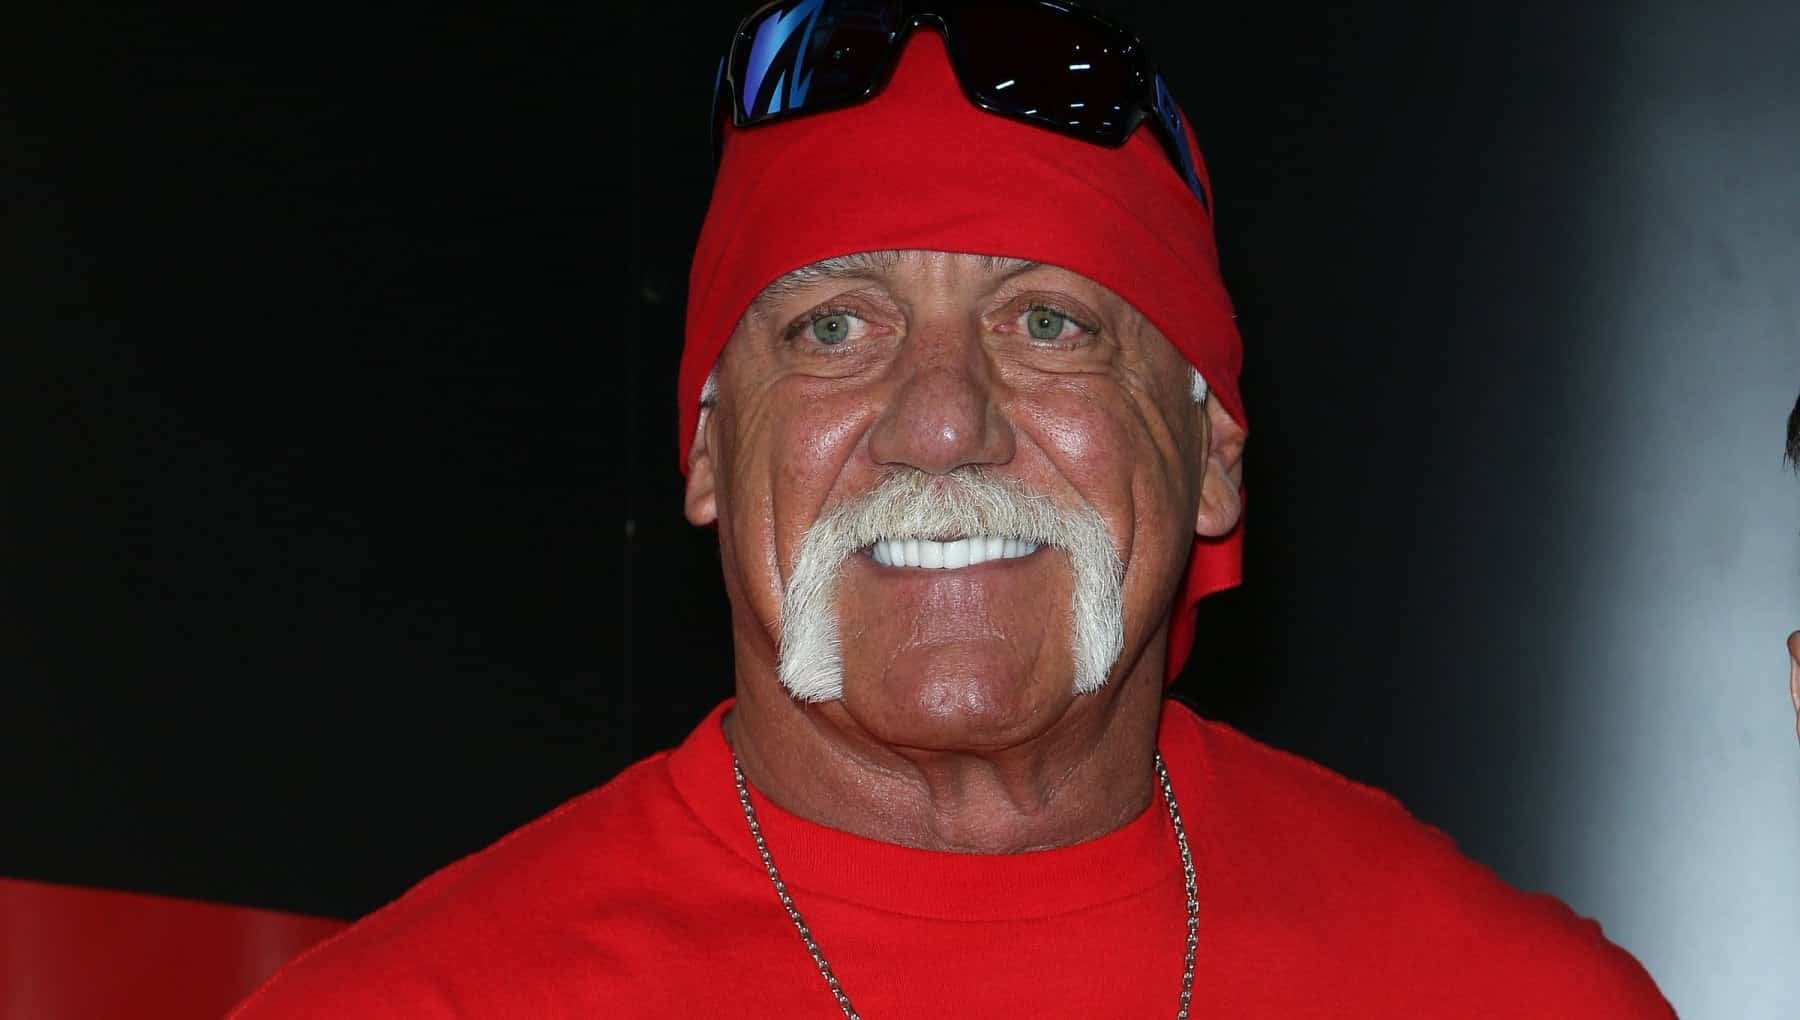 Hulk Hogan
